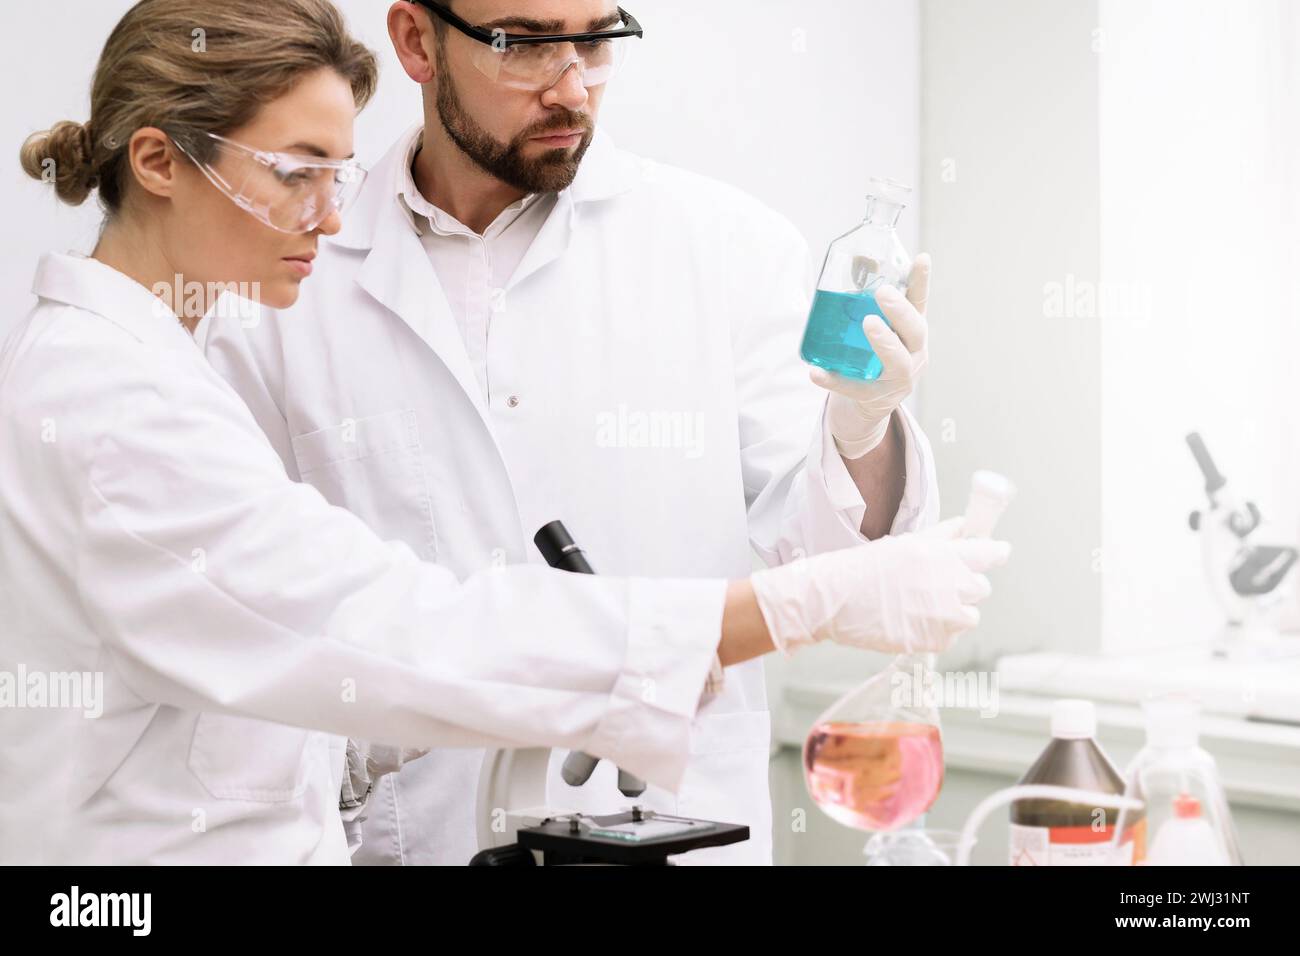 Deux étudiants travaillent en laboratoire pendant des travaux de recherche scientifique. Banque D'Images